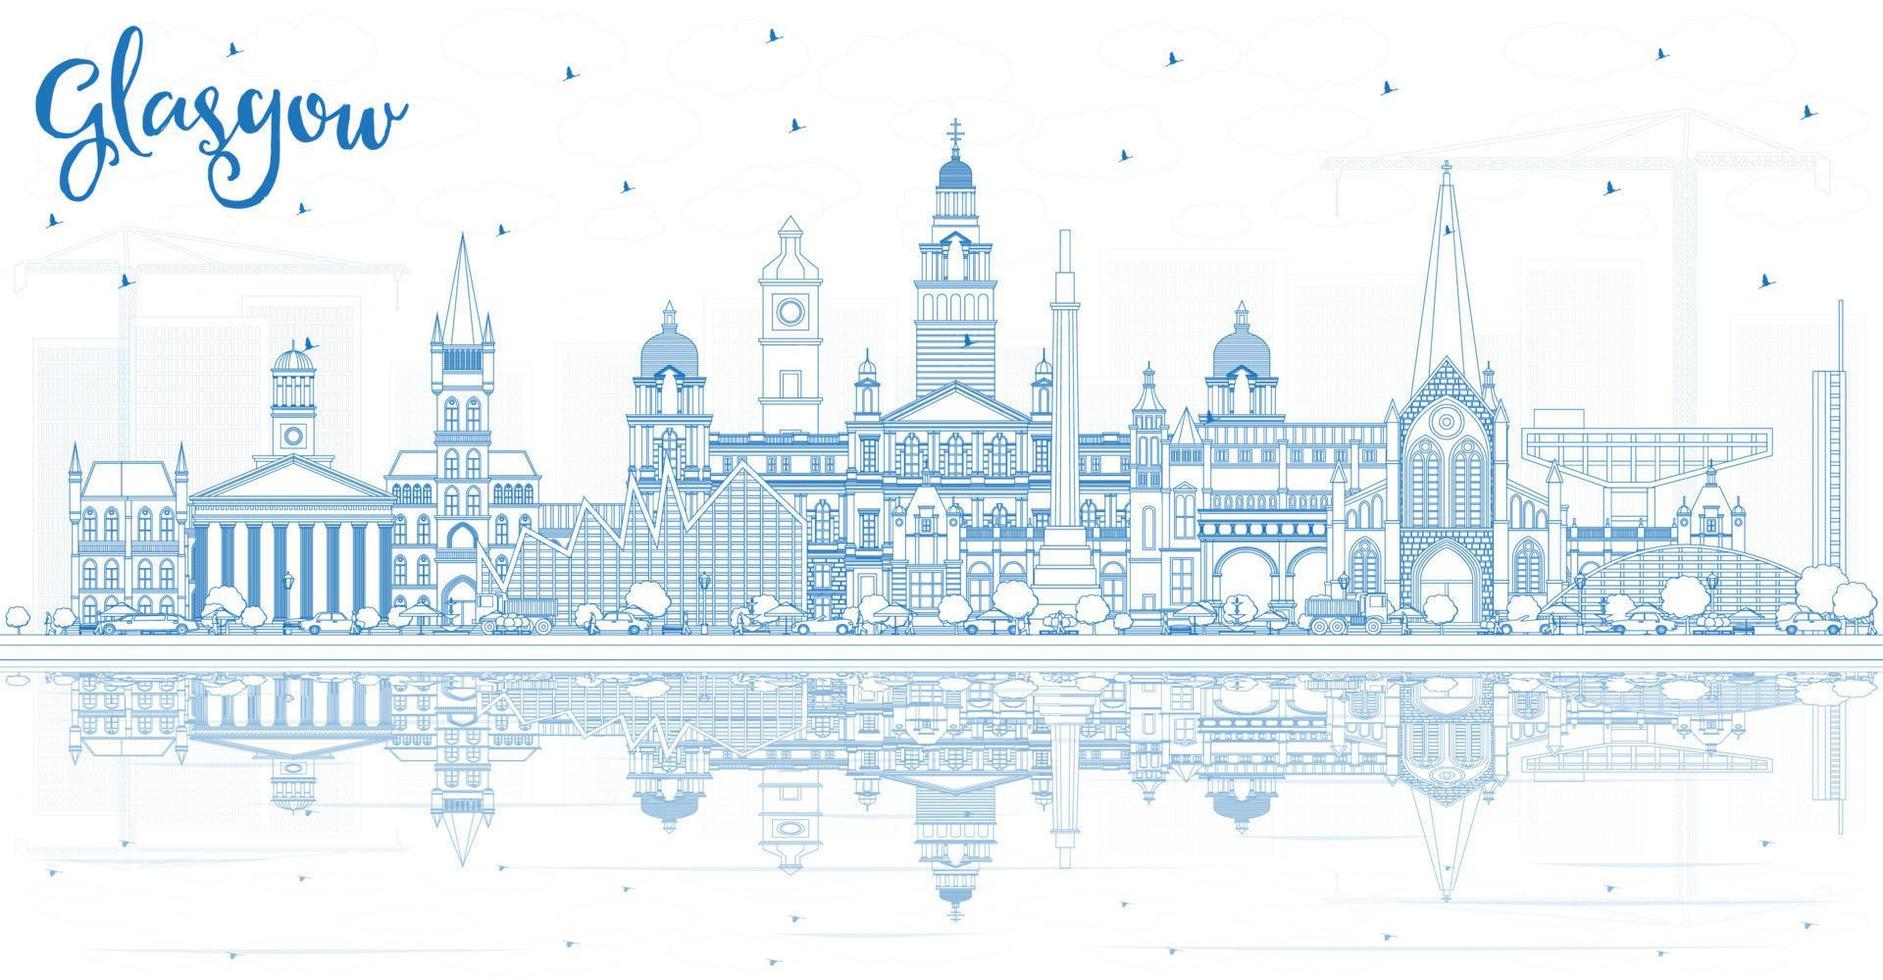 delinear el horizonte de la ciudad de glasgow escocia con edificios azules y reflejos. vector